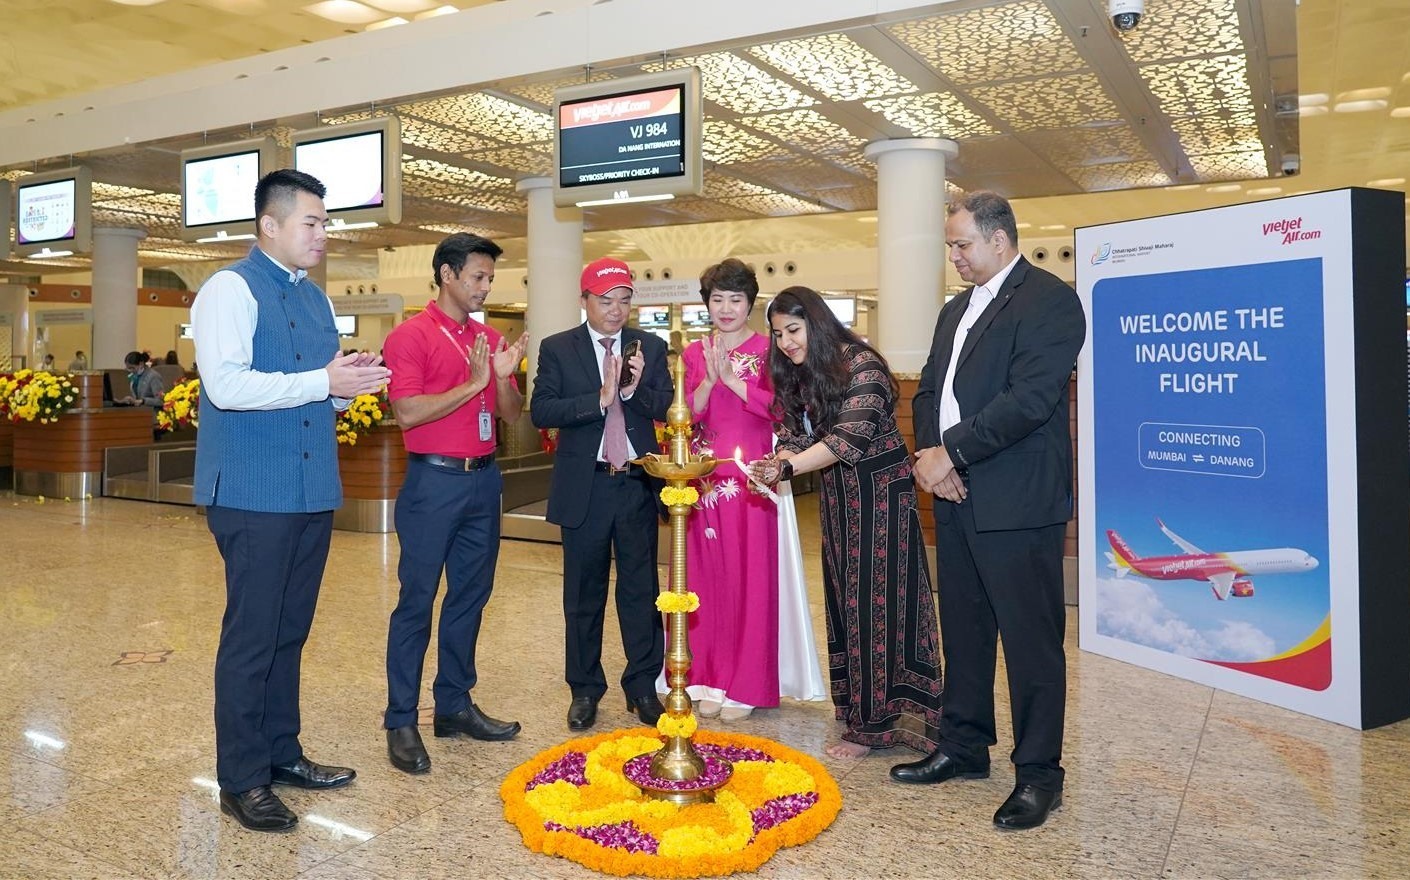 Tổng lãnh sự Việt Nam tại Mumbai - ông Hoàng Tùng (thứ 3 từ trái sang) tham dự nghi thức chào mừng và tặng hoa hành khách trên chuyến bay đầu tiên kết nối thành phố Mumbai với thành phố Đà Nẵng.